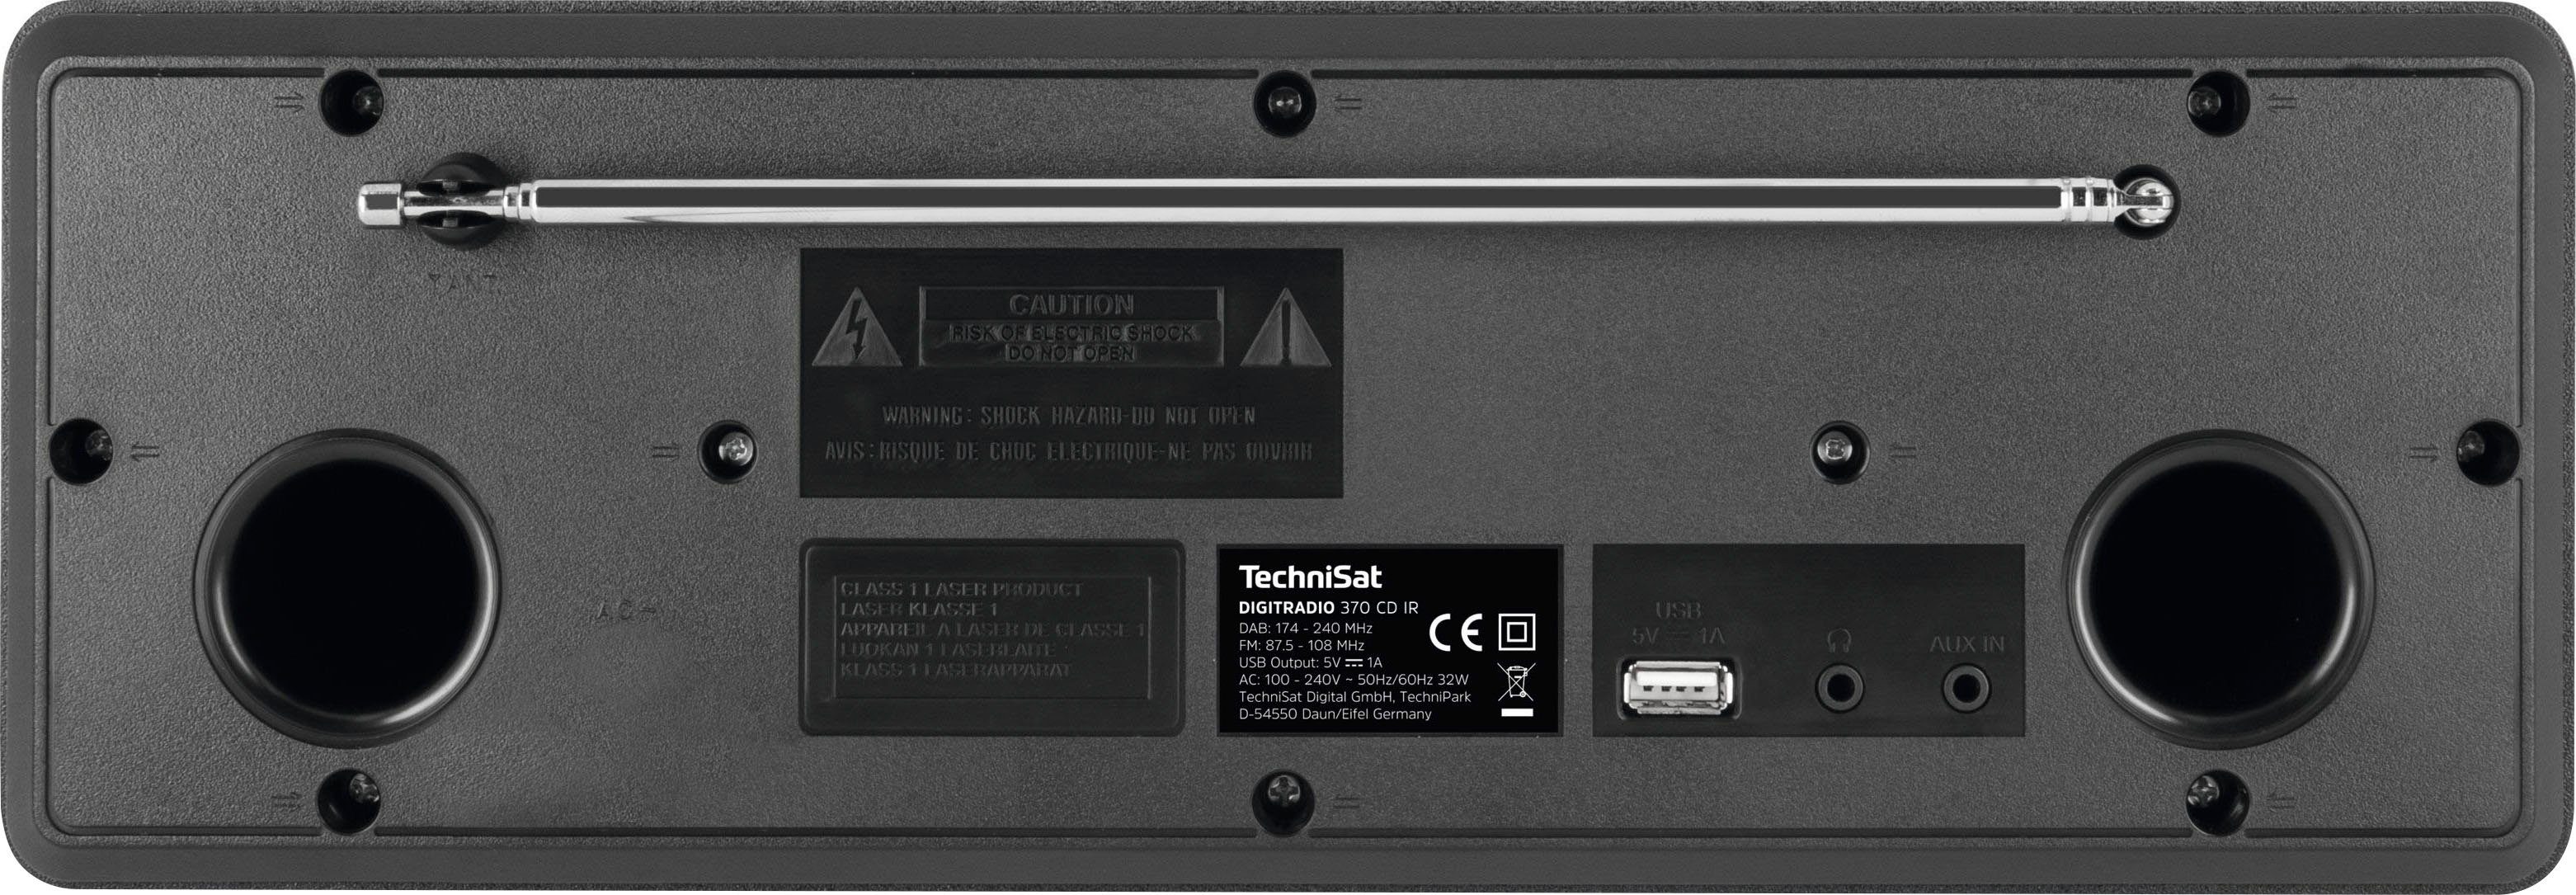 TechniSat 370 (Digitalradio DIGITRADIO (DAB), 10 (DAB) RDS, Digitalradio IR W) schwarz CD UKW mit